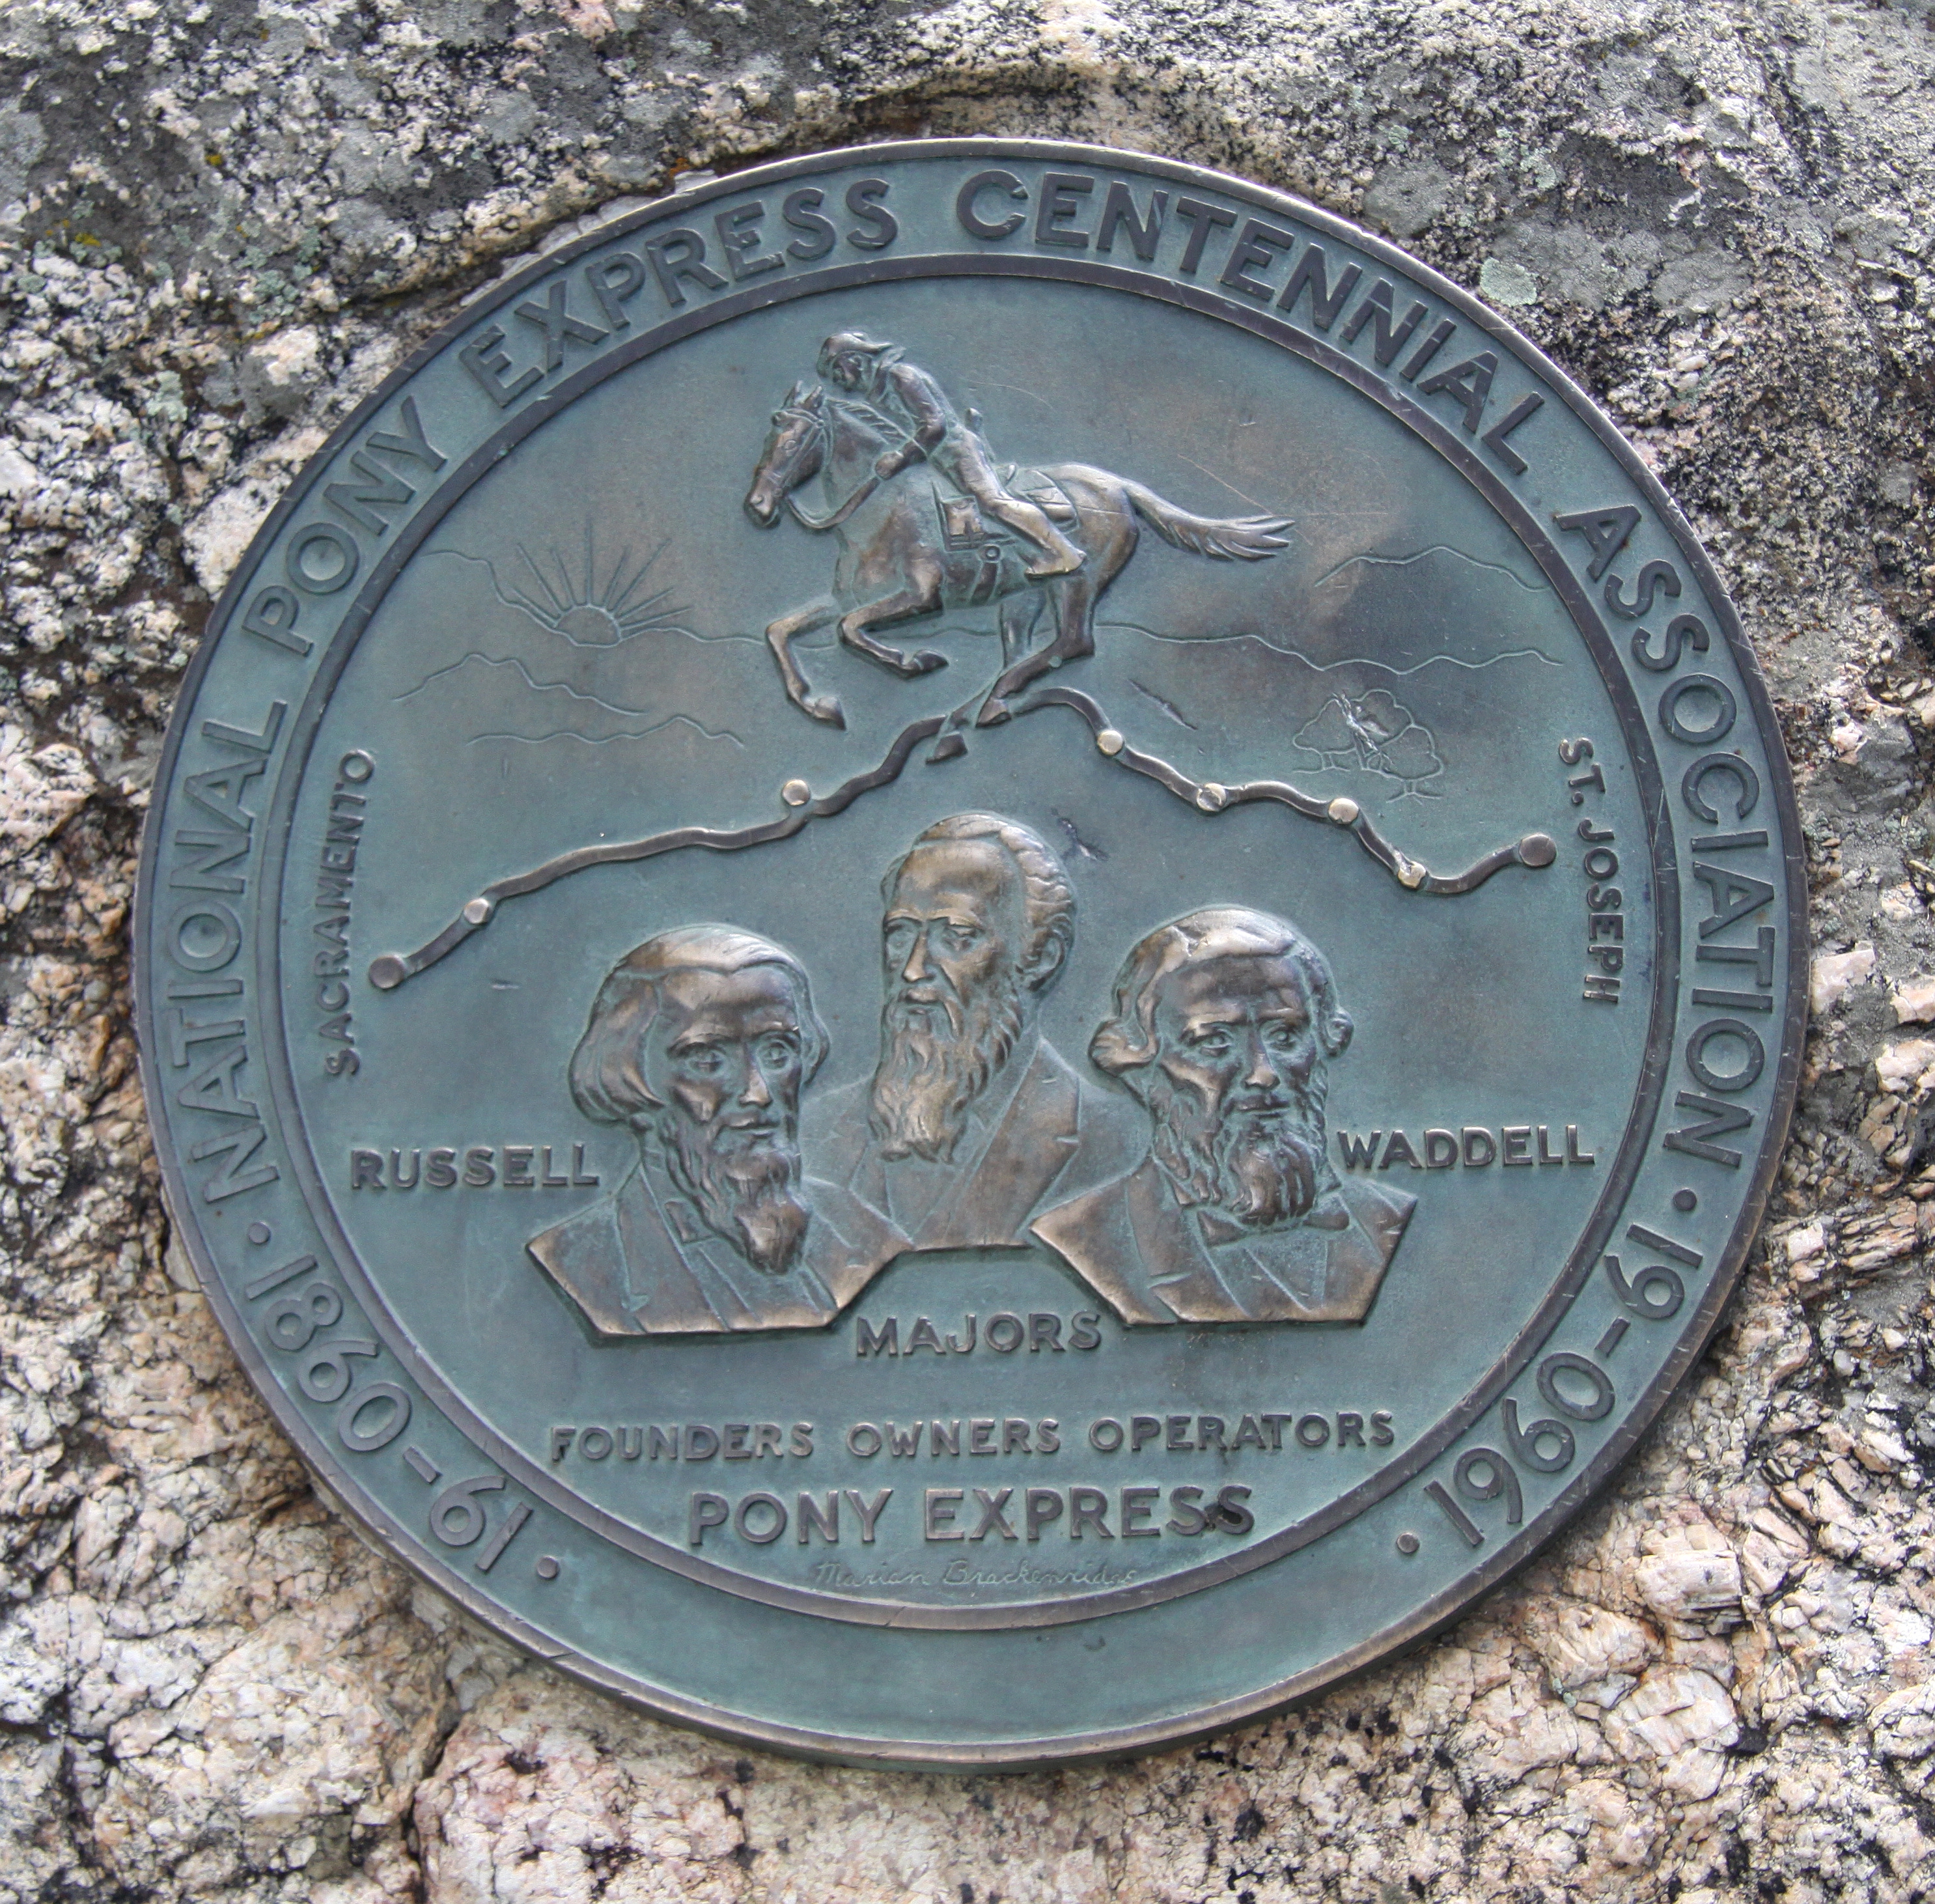 Golden:  Buffalo Bills Grave